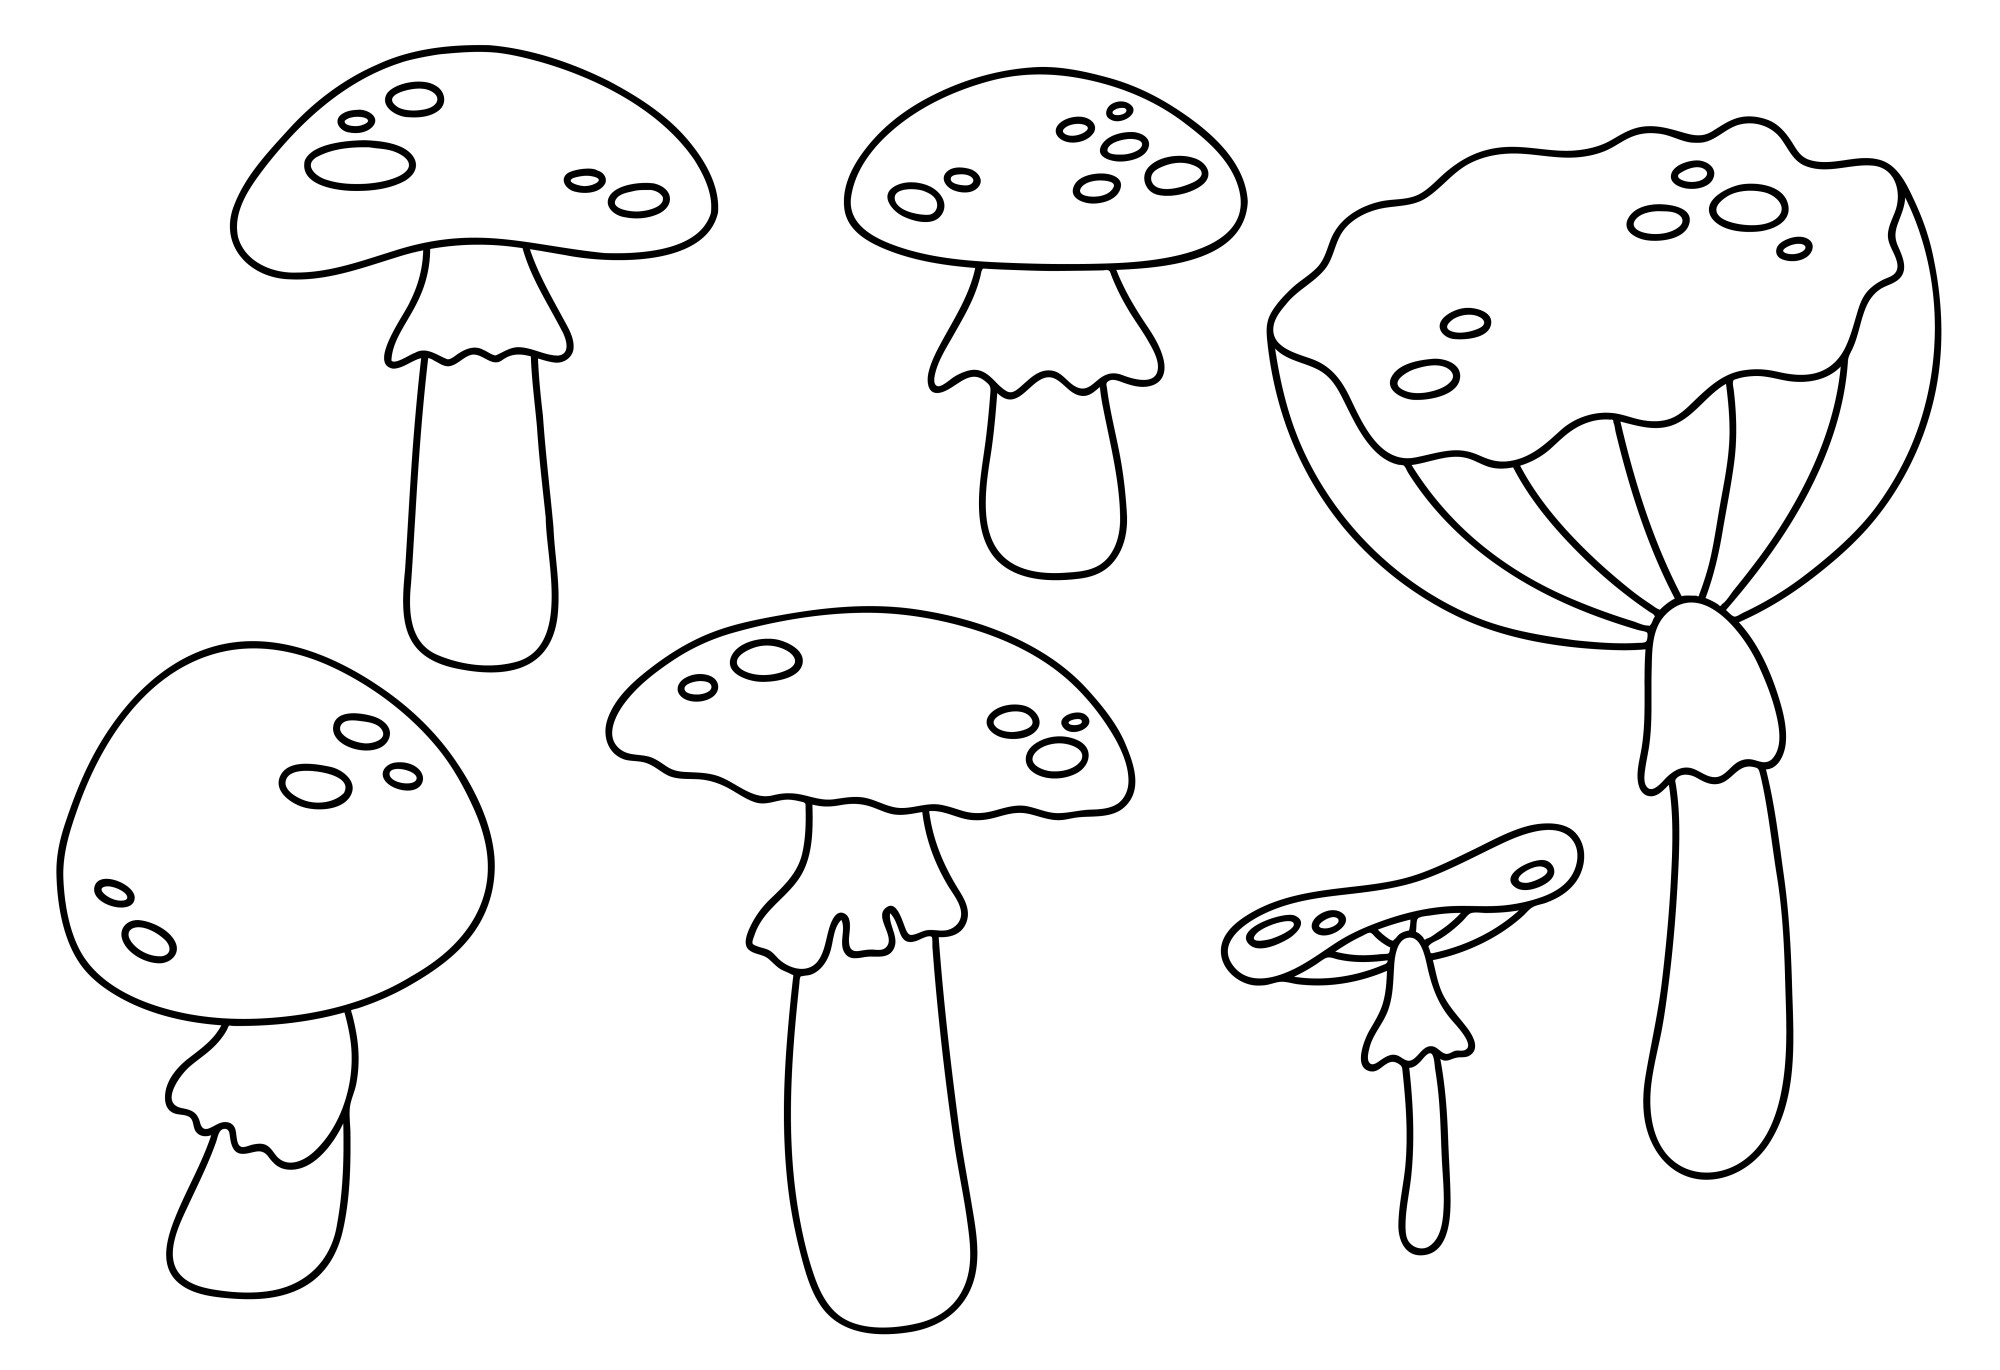 Раскраска для детей: набор грибочков